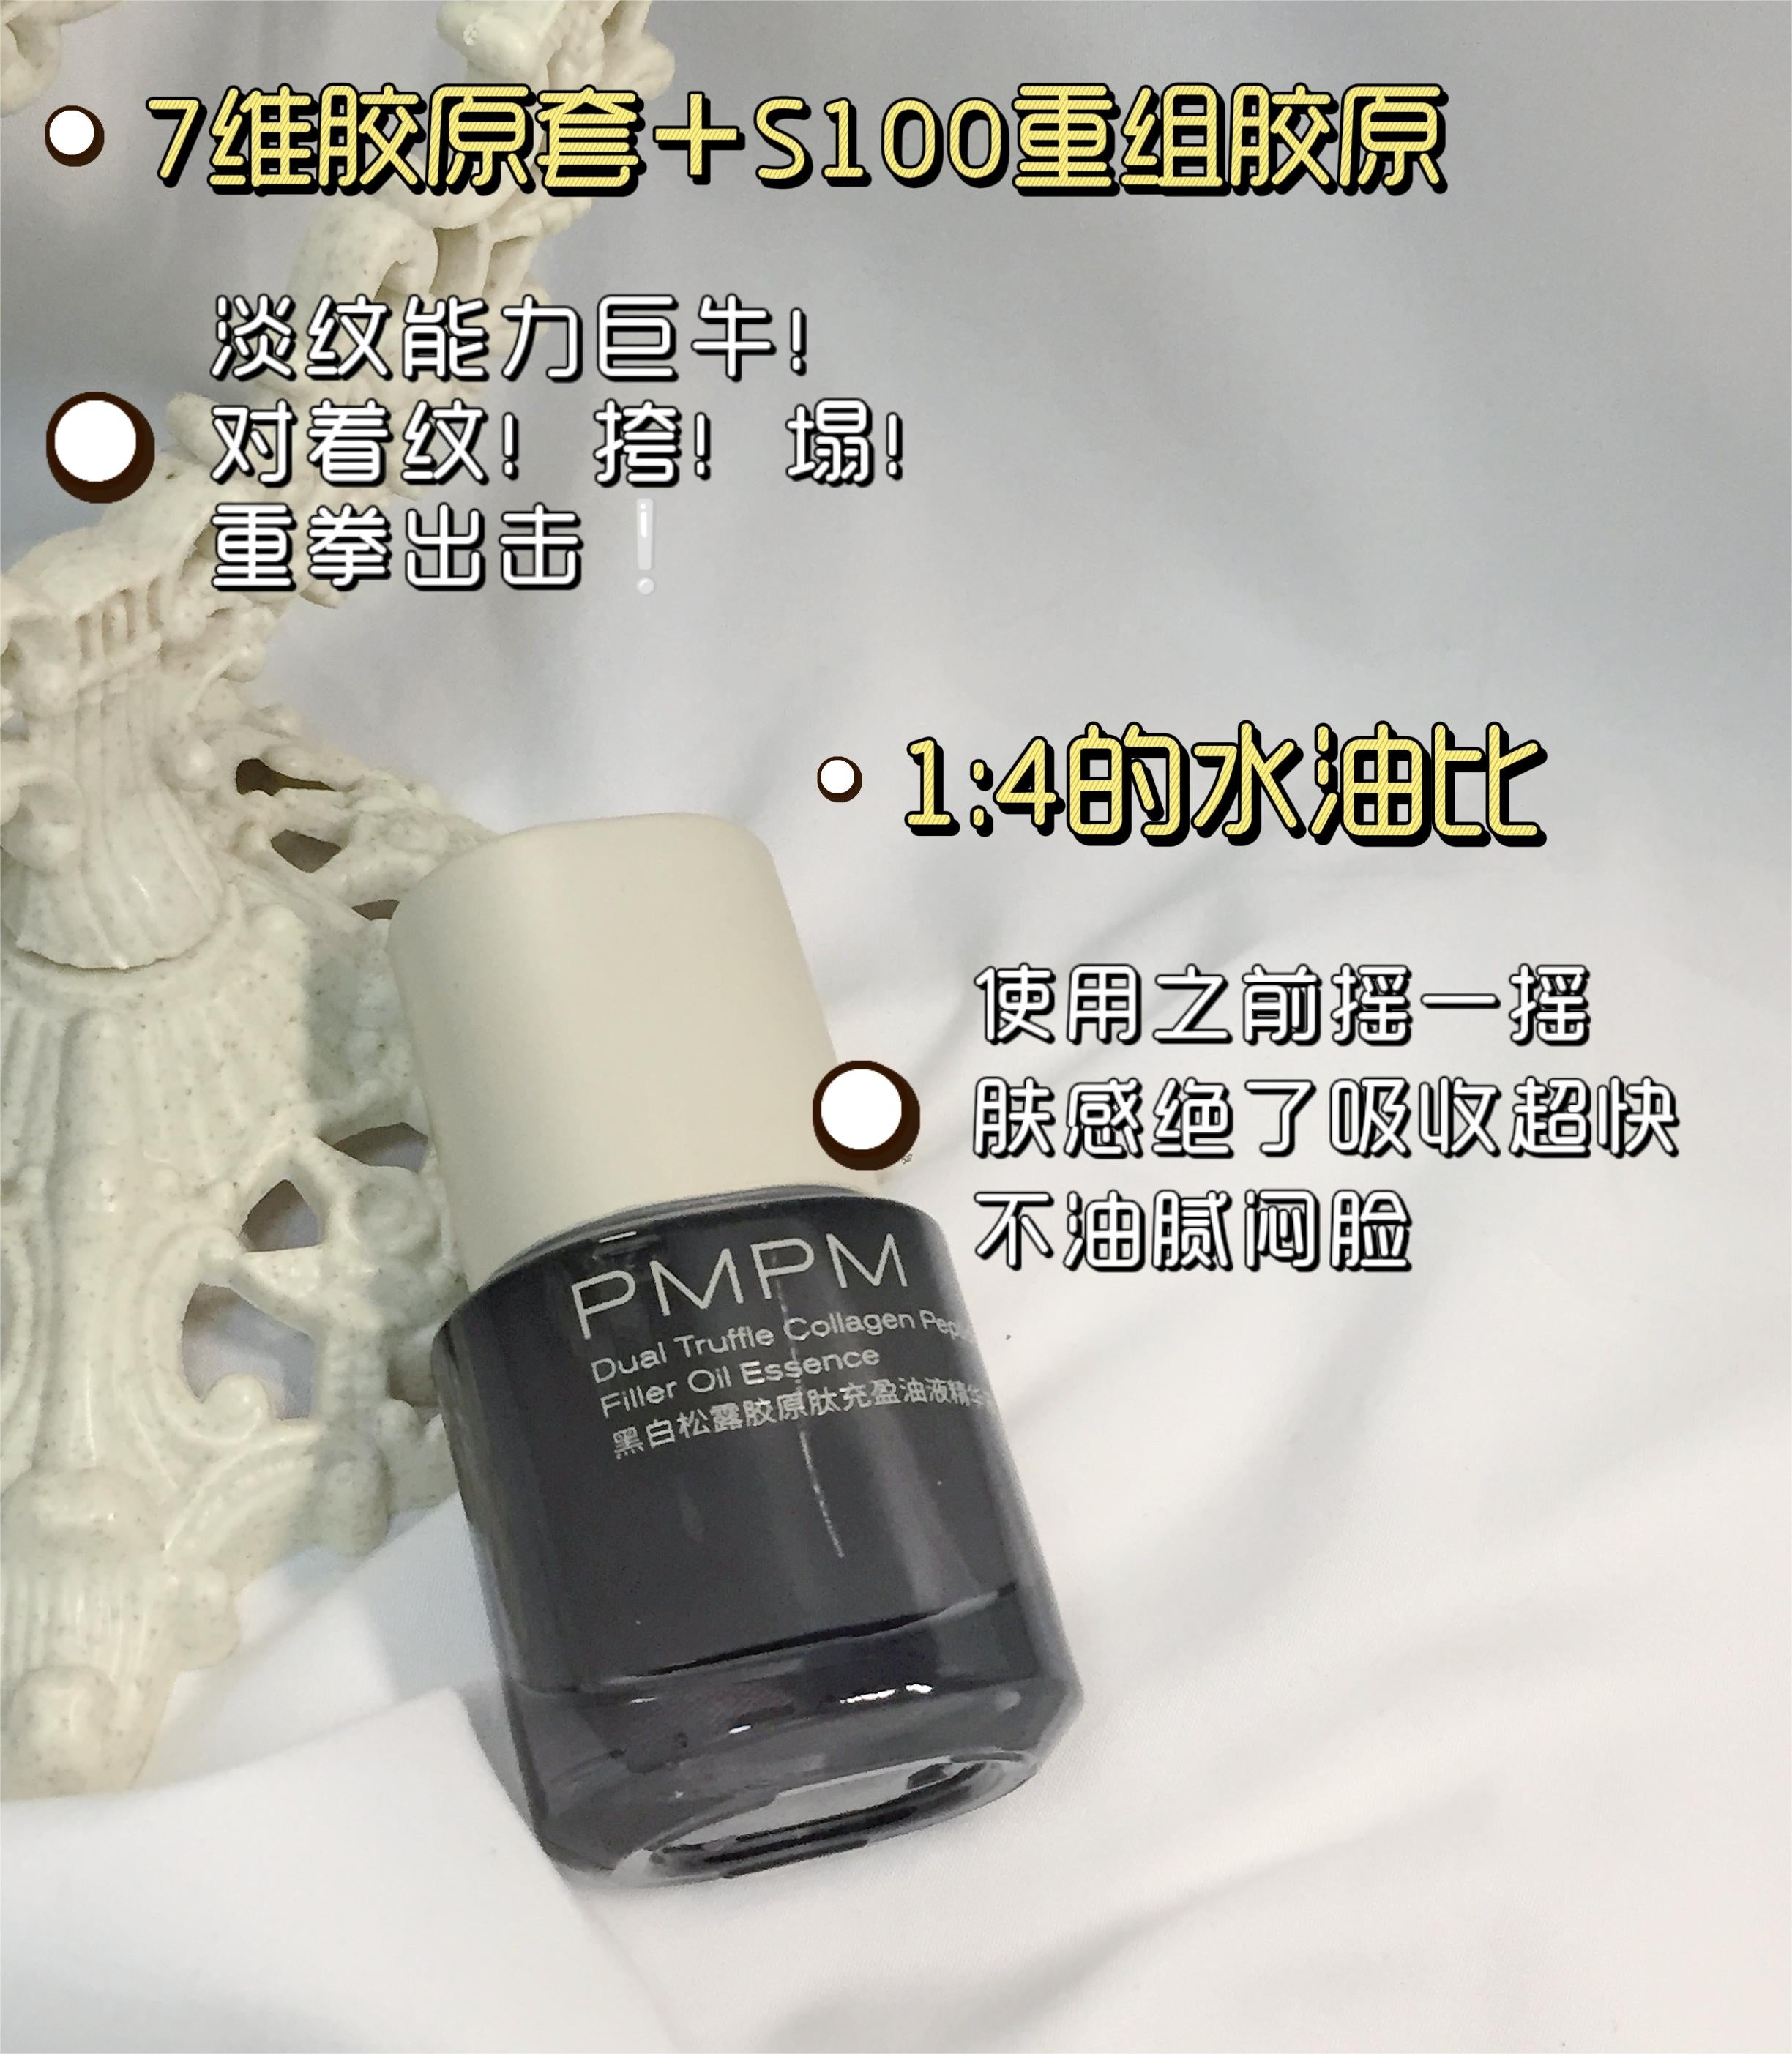 PMPM Dual Truffle Collagen Peptide Filler Oil Essence 3.0 30ml 偏偏黑白松露胶原肽充盈油液精华液3.0版